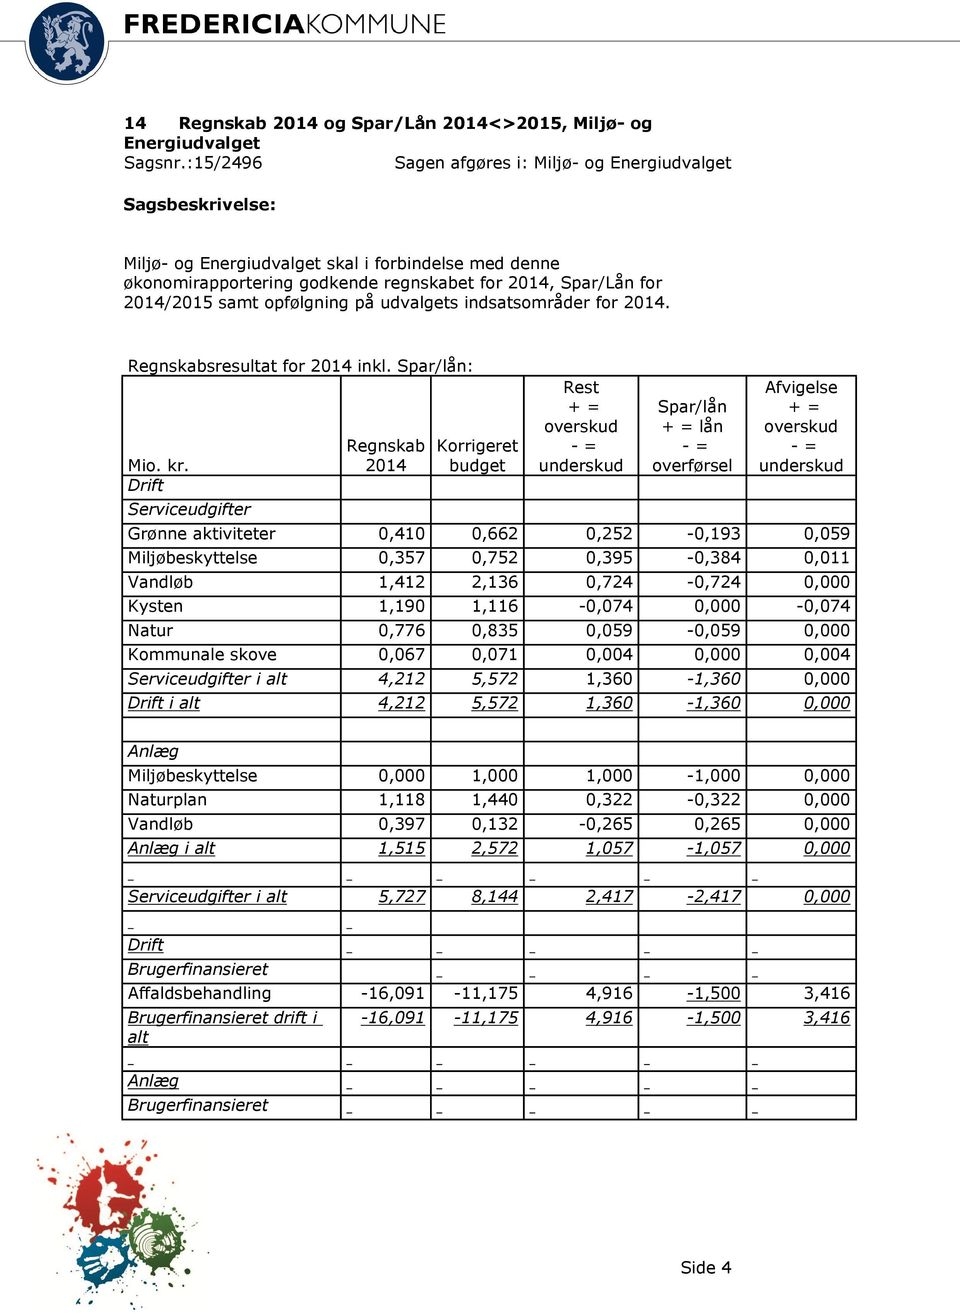 opfølgning på udvalgets indsatsområder for 2014. Regnskabsresultat for 2014 inkl. Spar/lån: Mio. kr.